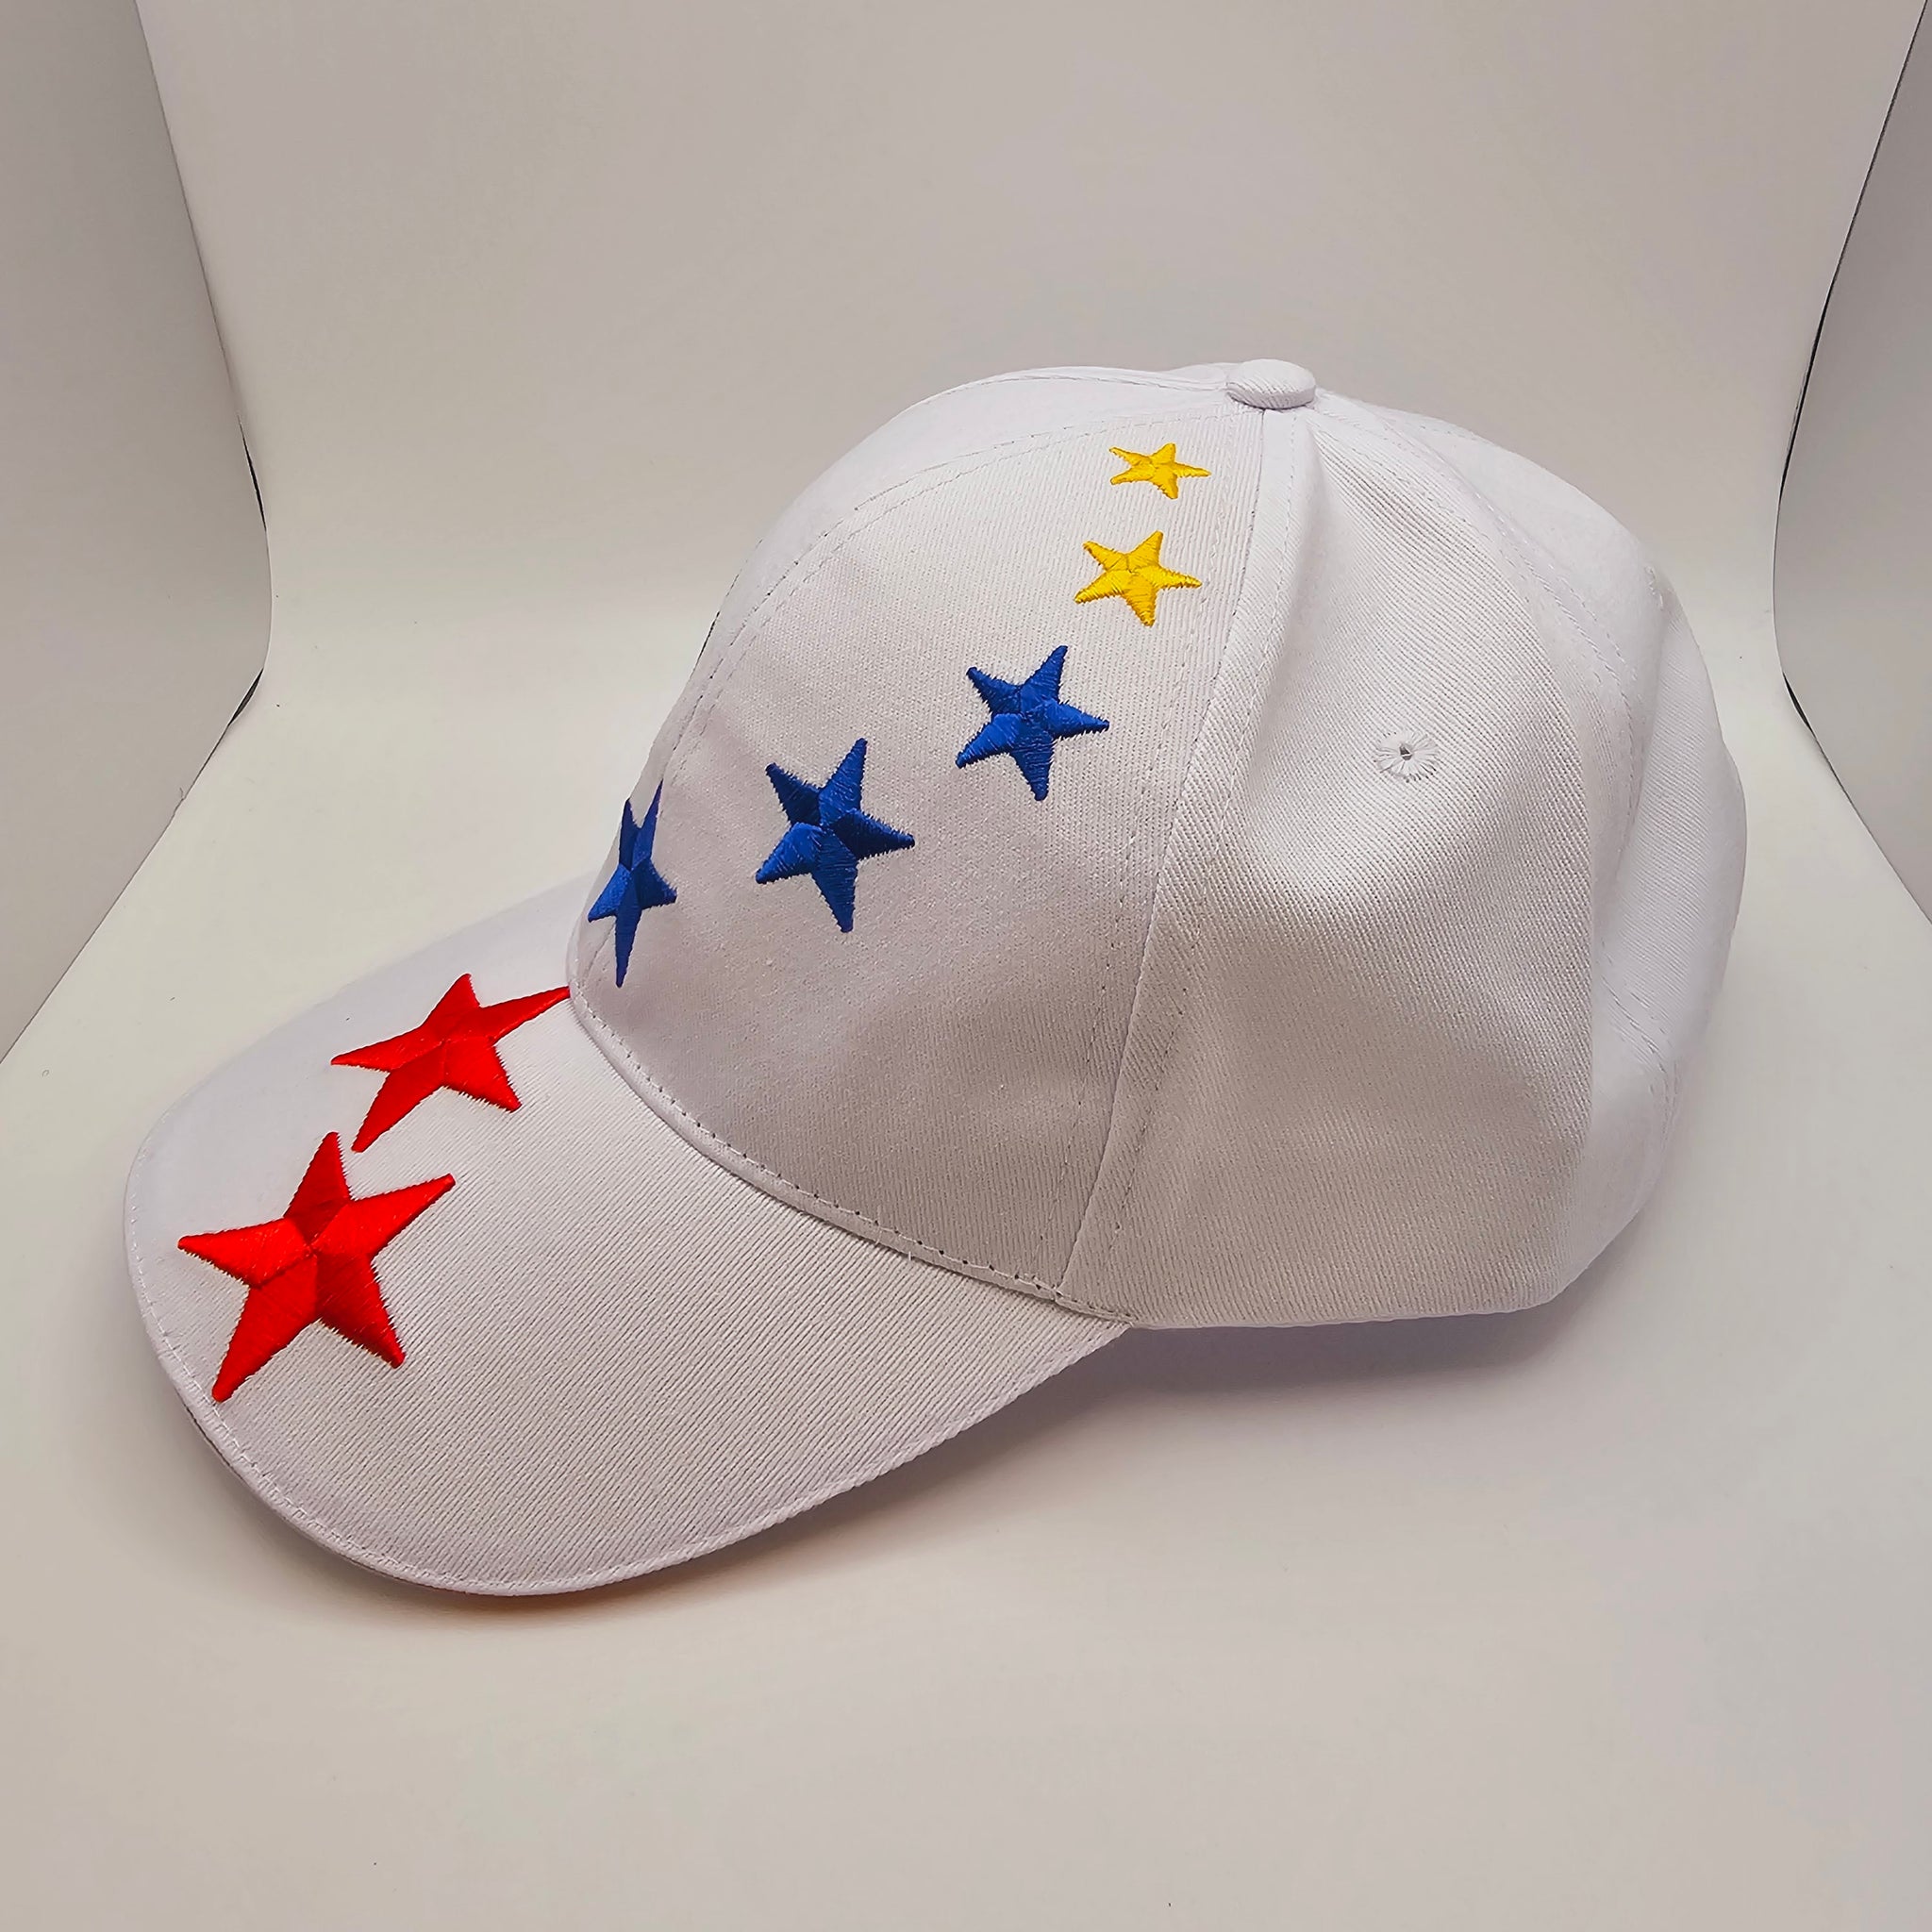 Venezuelan Caps 7 Stars Adjustable